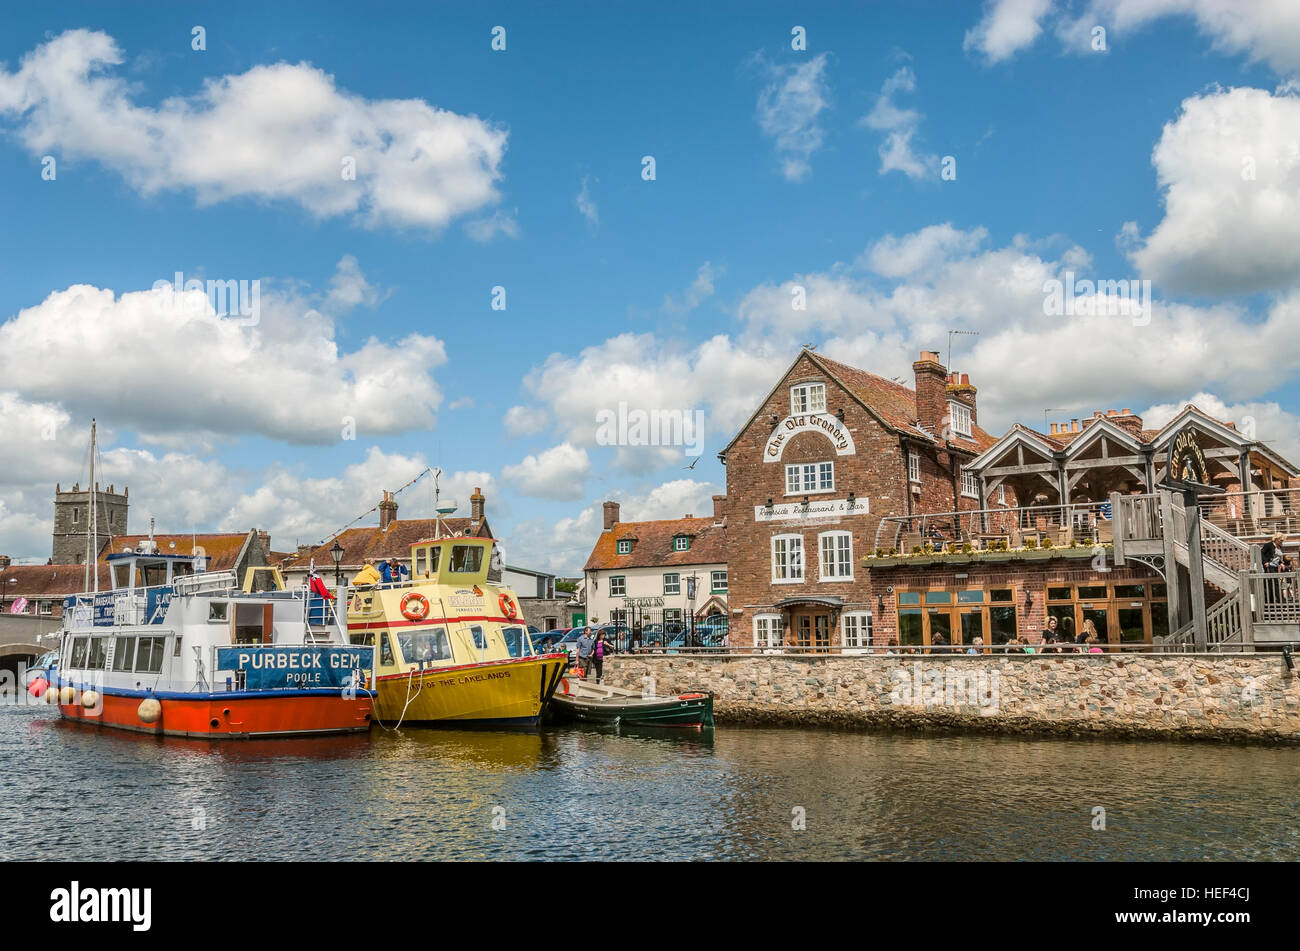 Sightseeing-Schiff und "Die alten kanarischen" Pub im Wareham Wharf am Fluß Frome, Dorset, South East England. Stockfoto